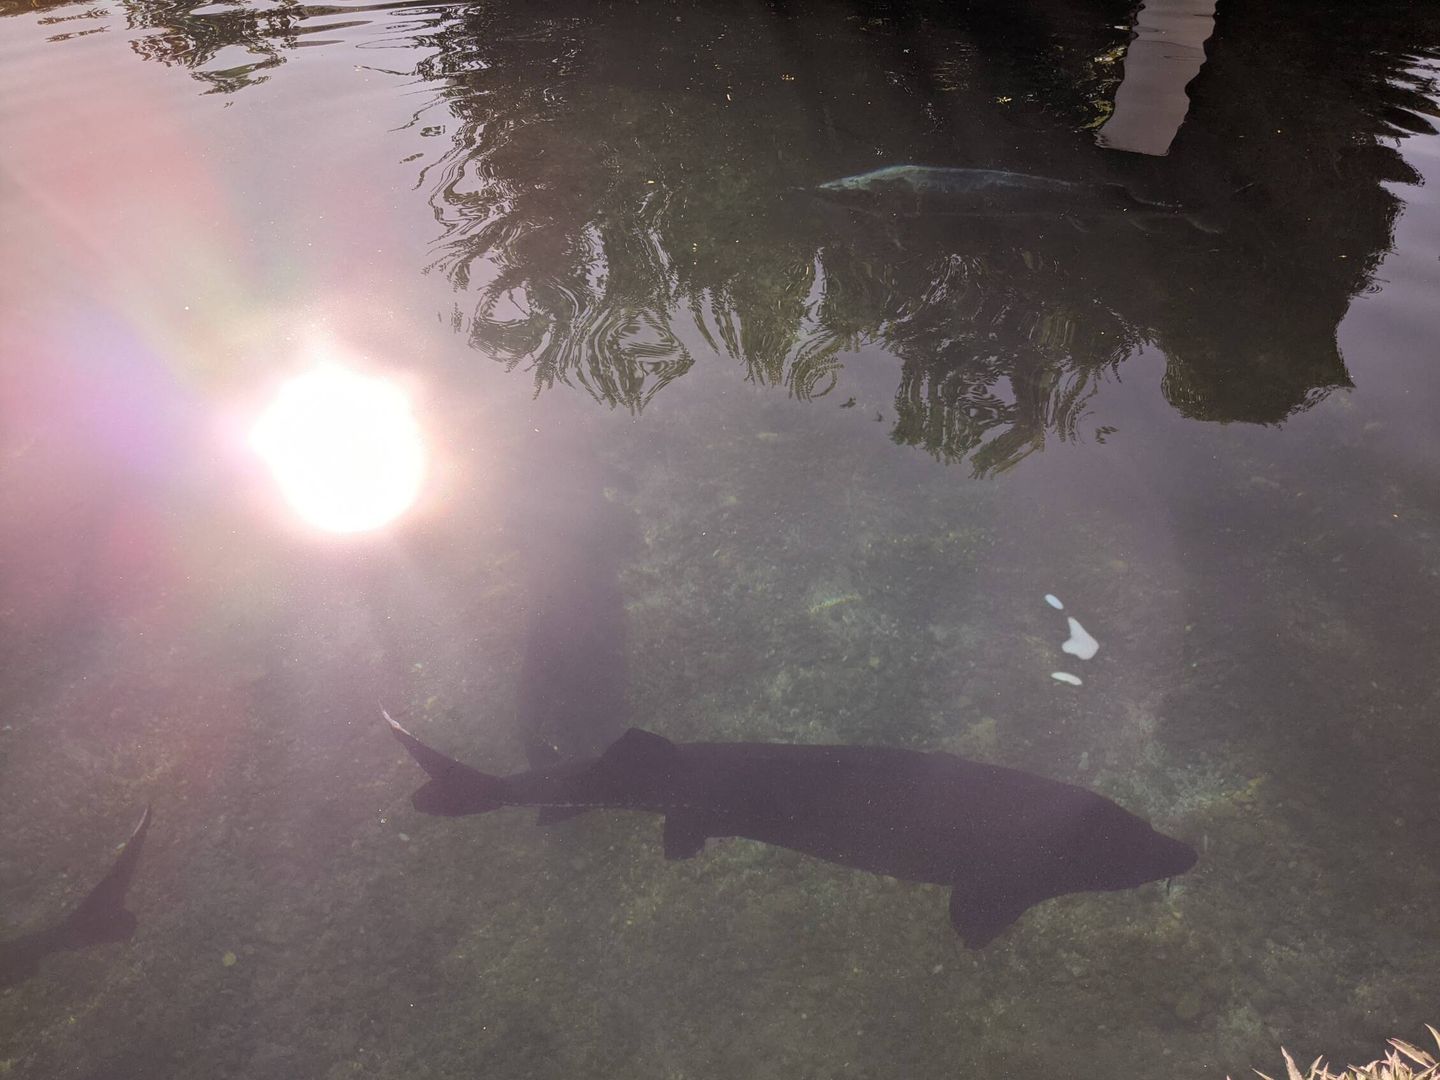 Un ejemplar de esturión beluga nada en una de las piscinas de Riofrío. (A. V.)